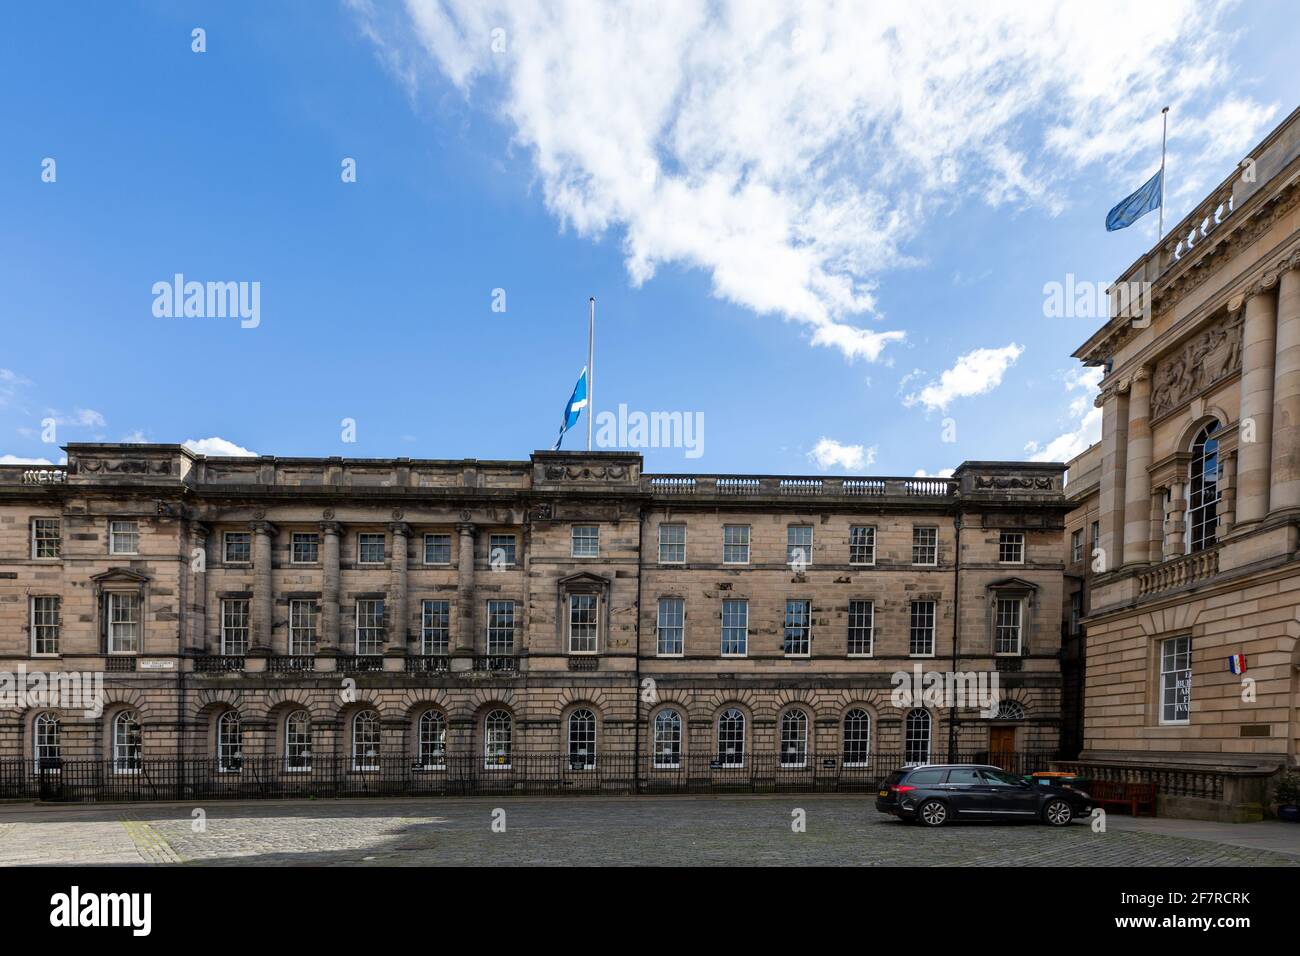 Édimbourg, Royaume-Uni. 9 avril 2021. Les drapeaux sur les bâtiments d'Édimbourg volent à mi-mât pour le duc d'Édimbourg crédit: David Coulson/Alay Live News Banque D'Images